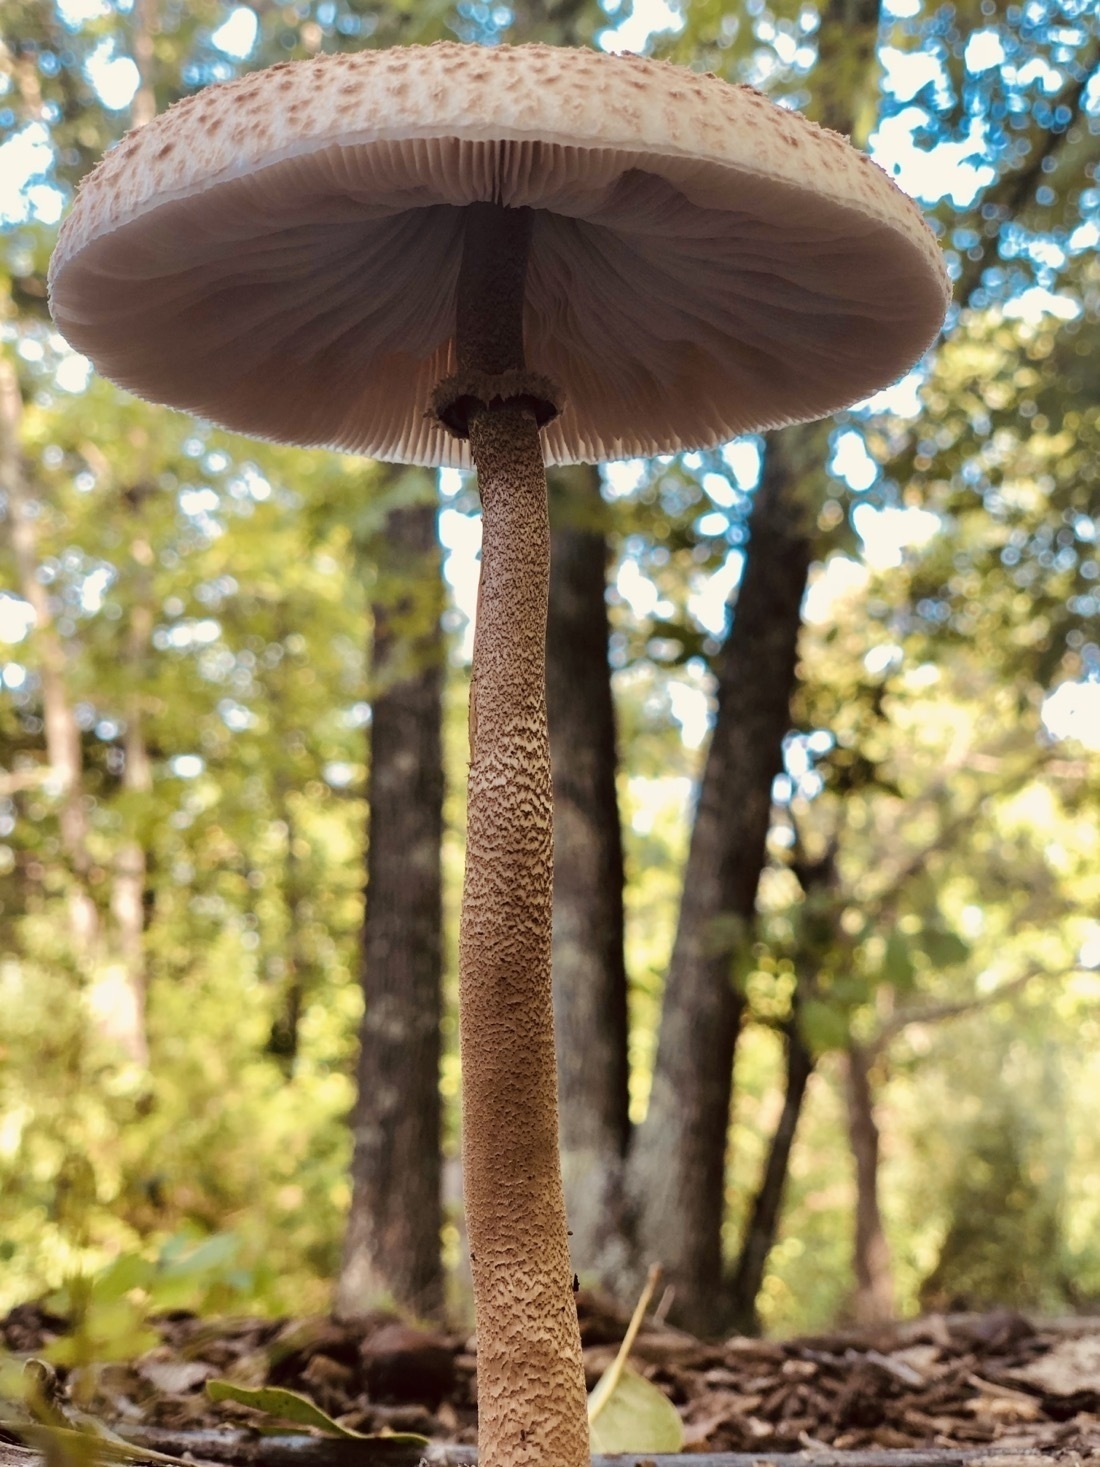 a white, cream colored mushroom